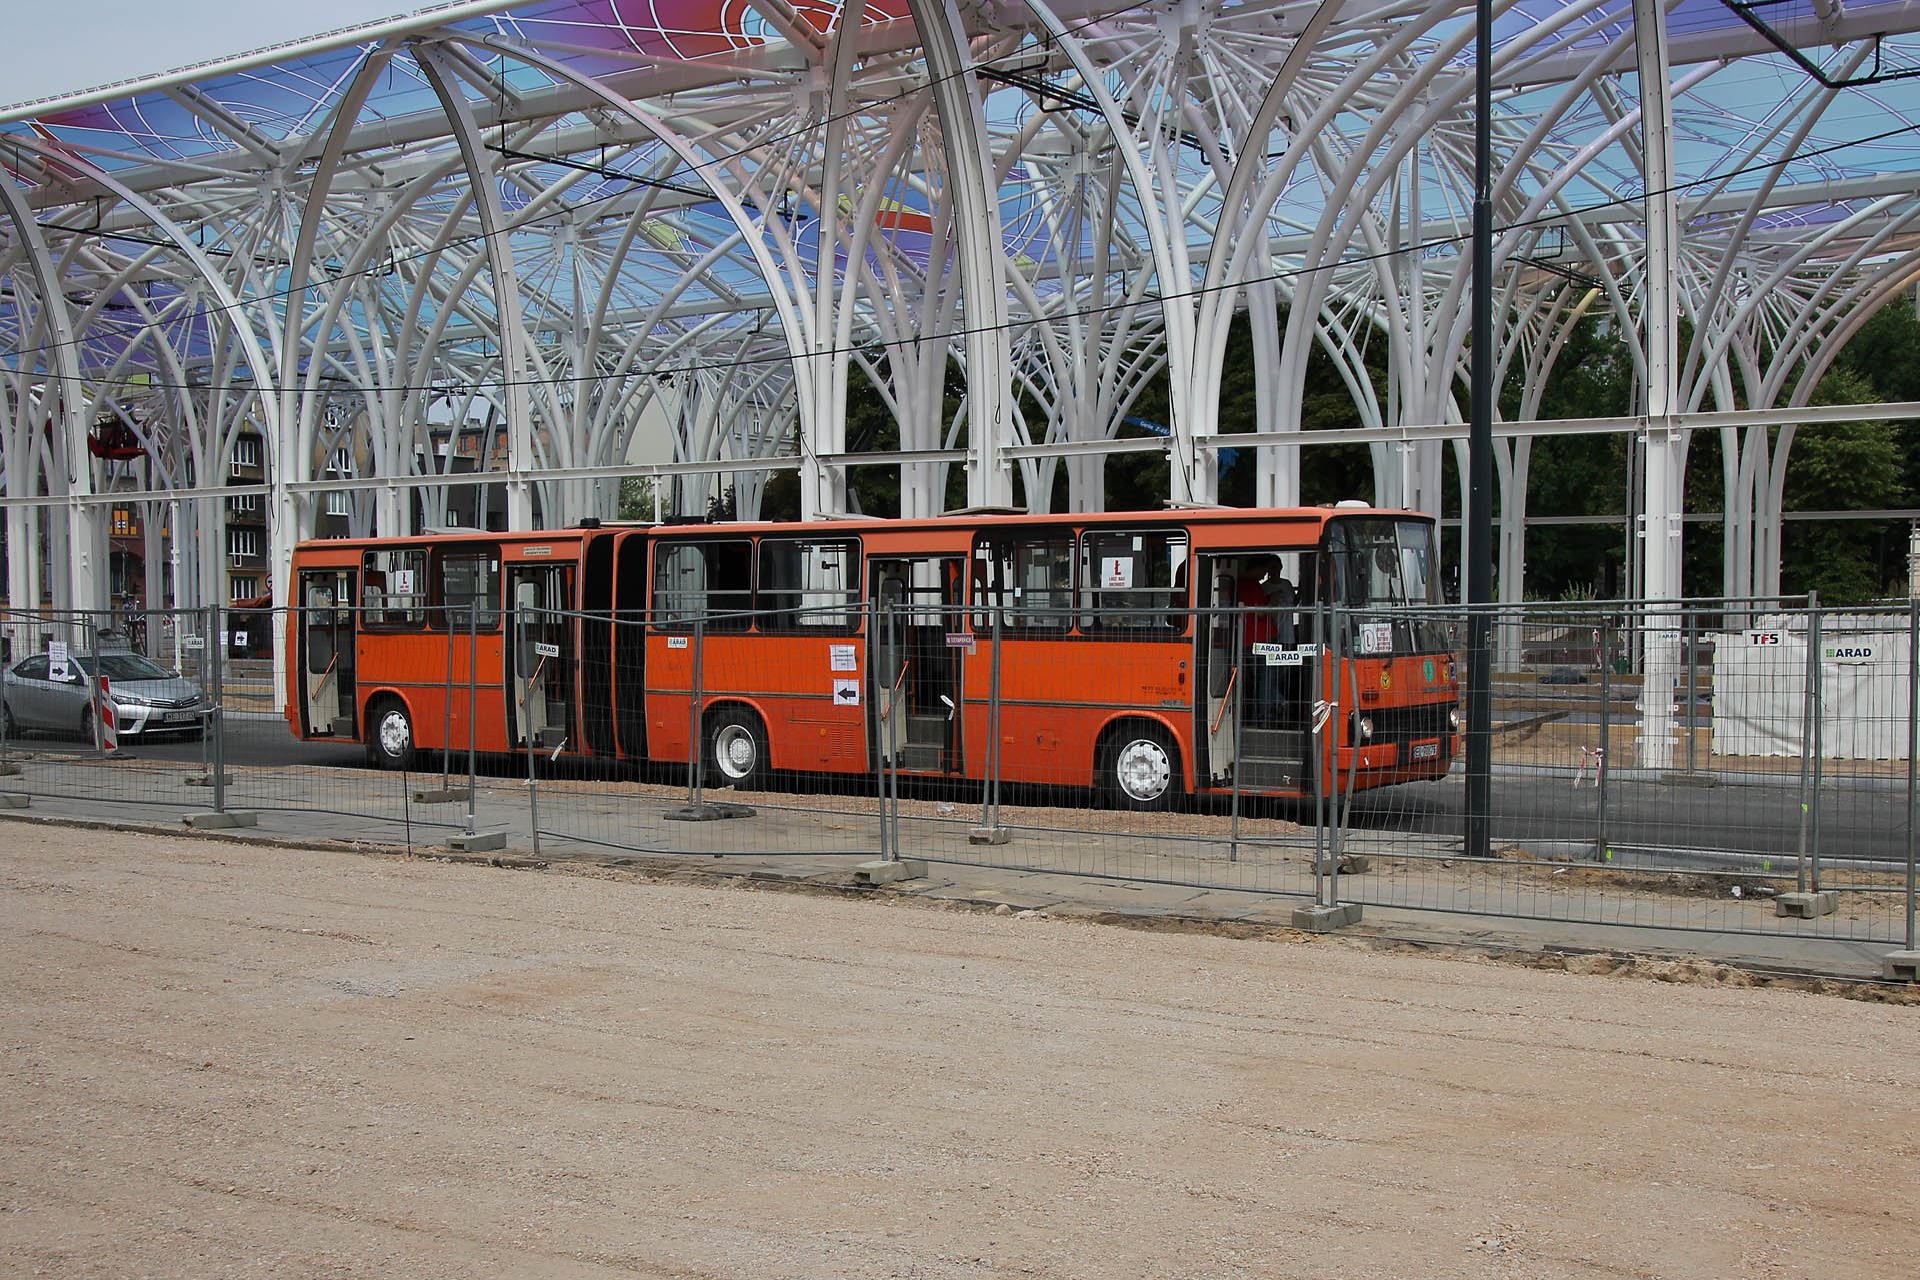 Piotrkowska Centrum Für die Busfreunde: ein Ikarus Bus For the friends of buses: an Ikarus bus